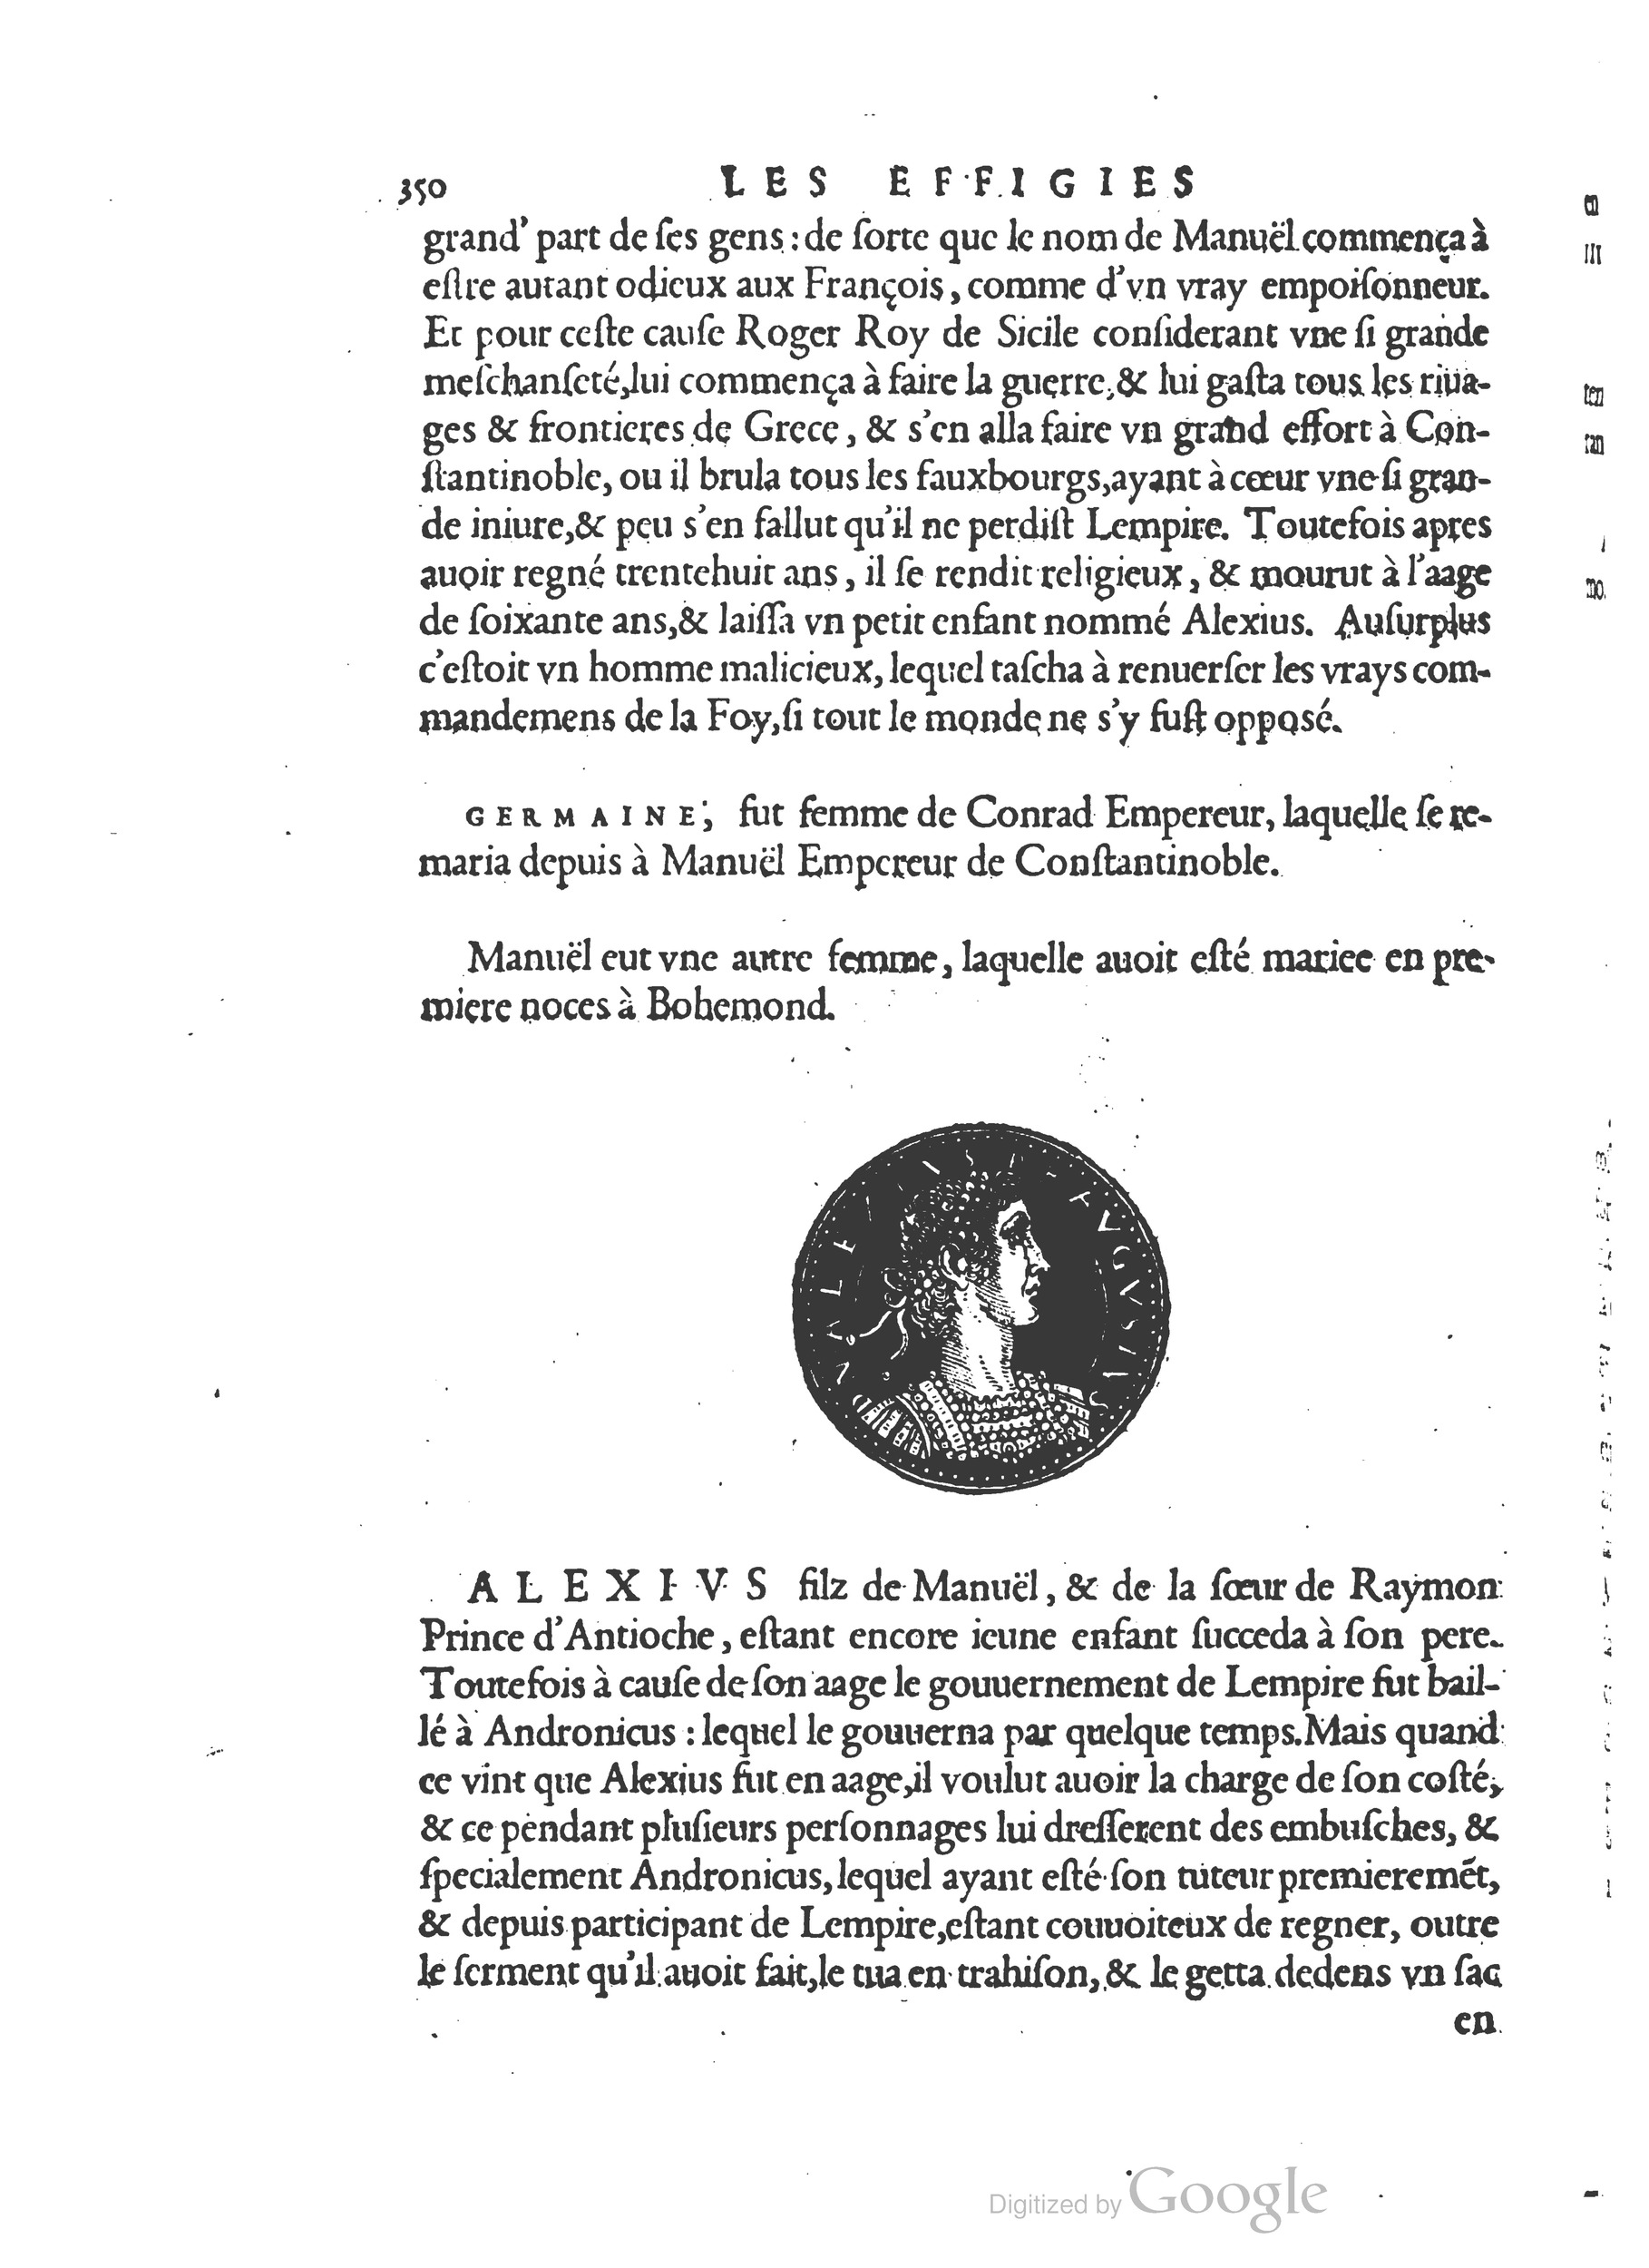 1553 Epitome du trésor des antiquités Strada Guérin_BM Lyon_Page_383.jpg